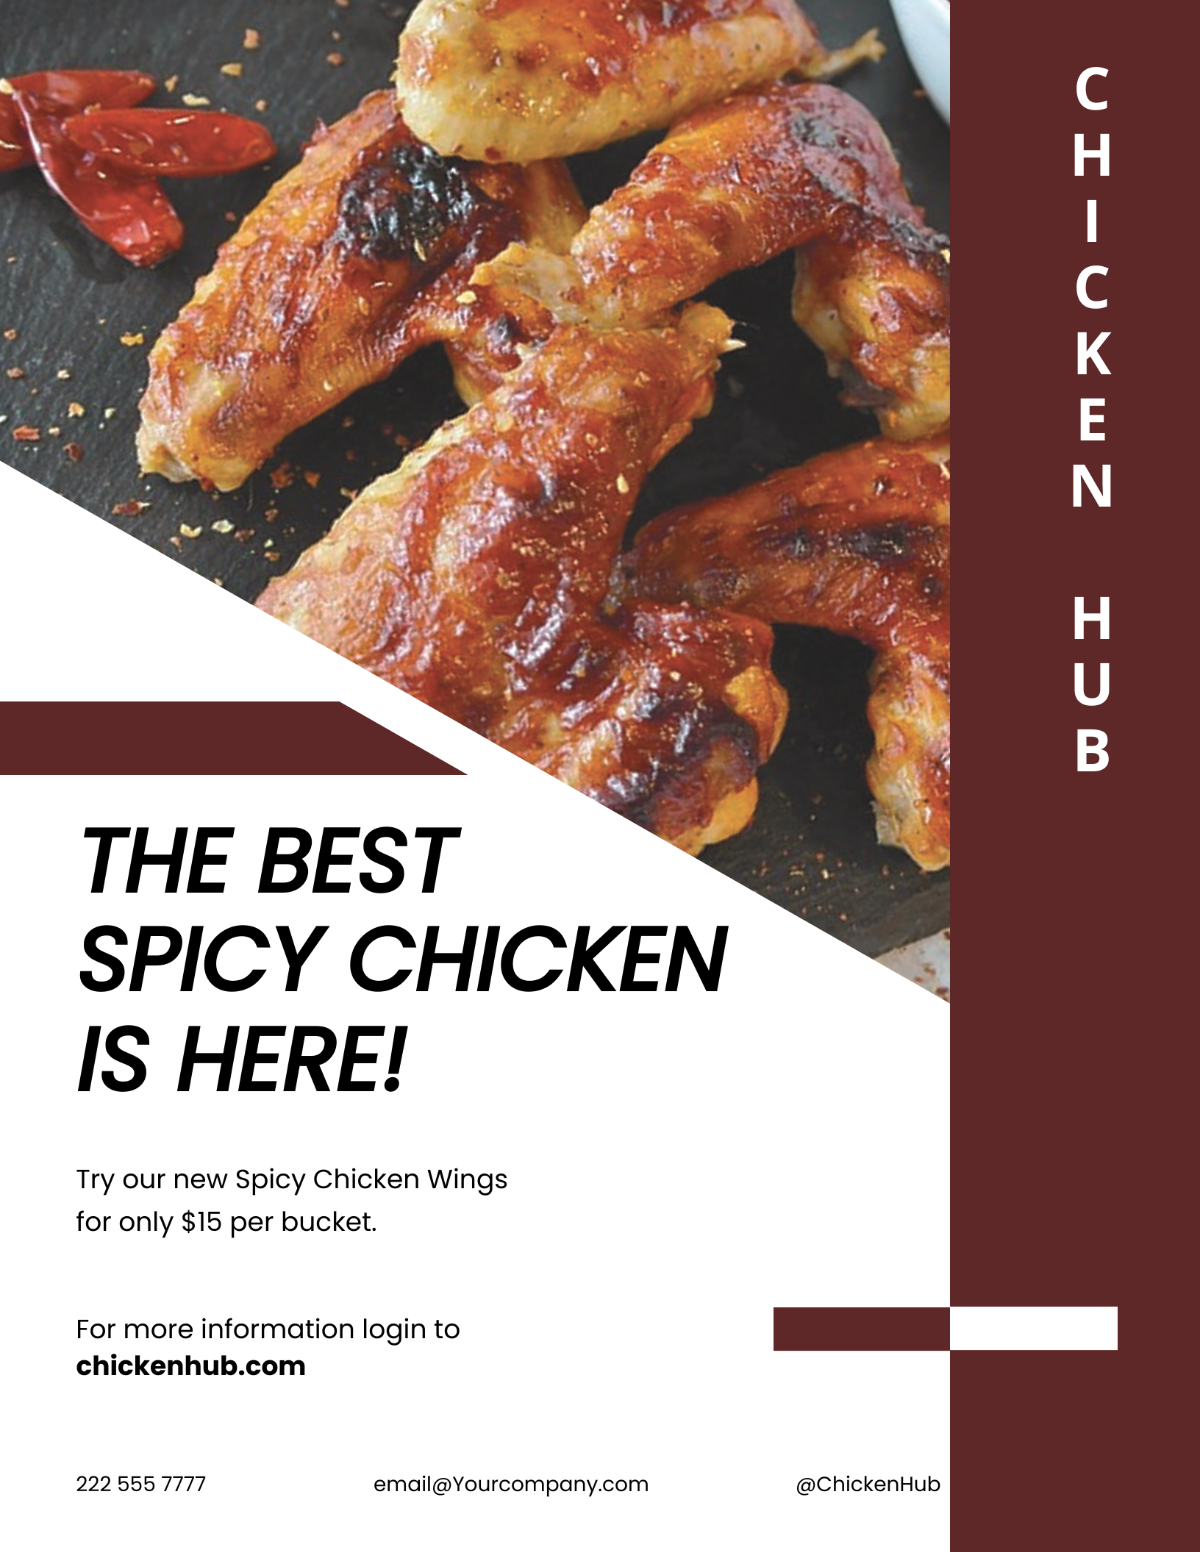 Spicy Chicken Restaurant Flyer Template